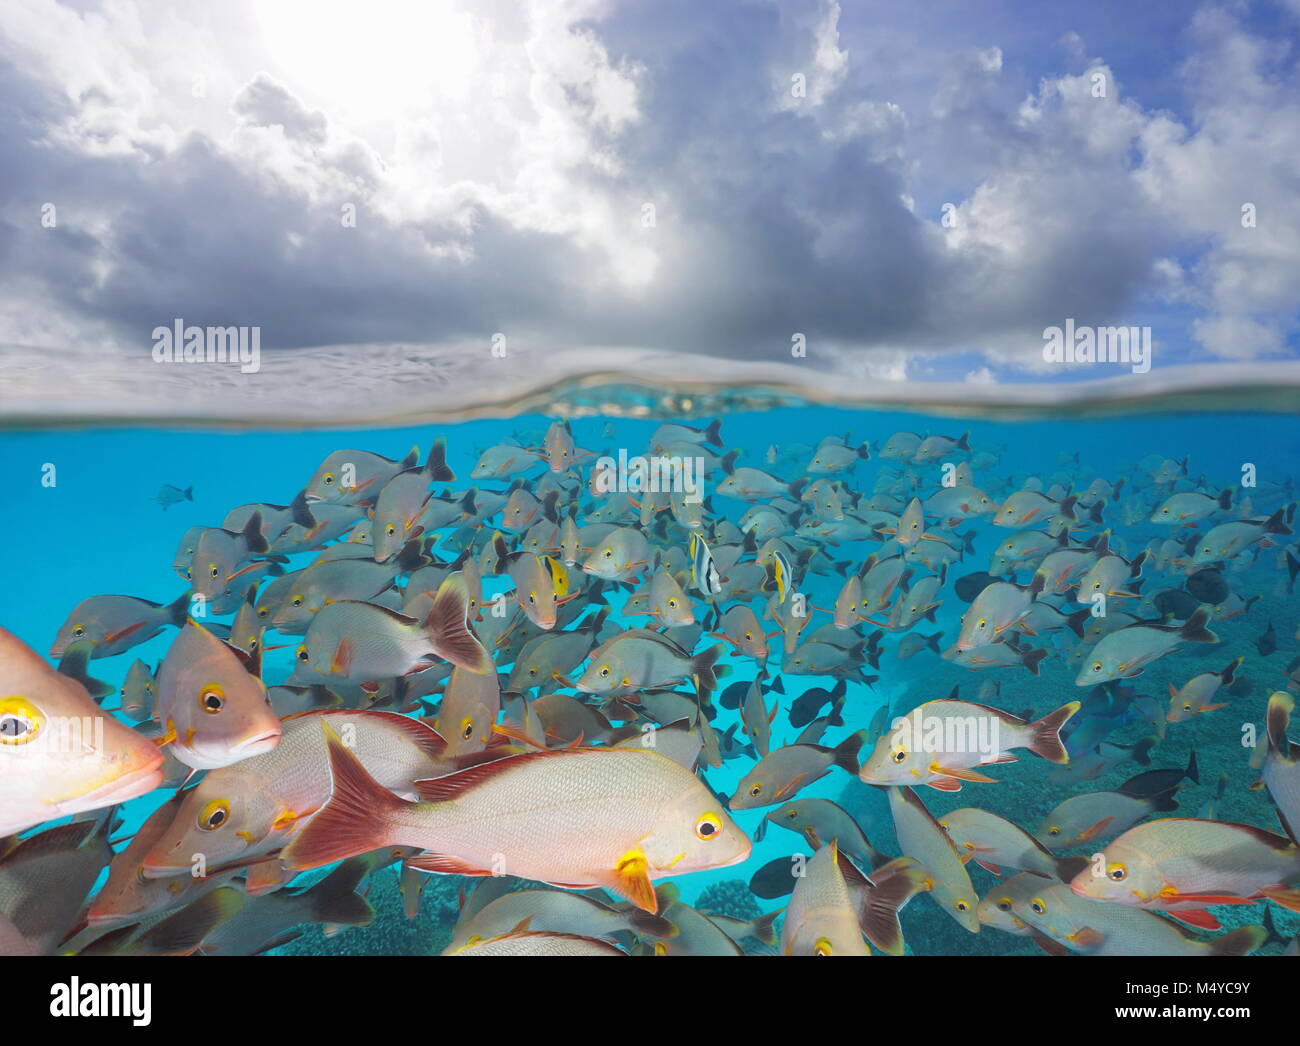 In banchi di pesci subacquei con nuvole nel cielo, la vista suddivisa al di sopra e al di sotto della superficie dell'acqua, Rangiroa, Tuamotus, oceano pacifico, Polinesia Francese Foto Stock